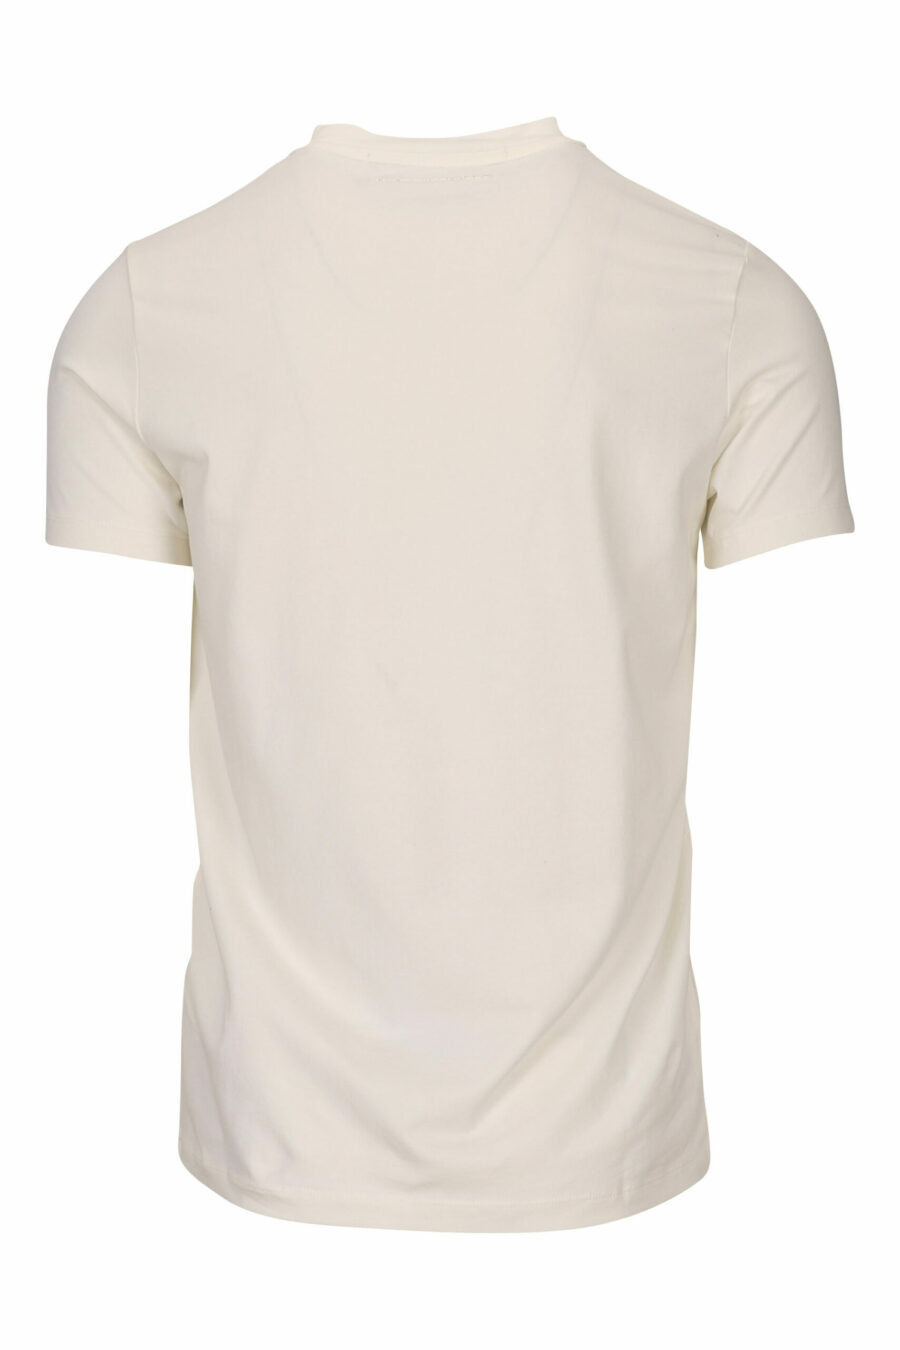 Camiseta blanca con maxilogo monocromático "rue st guillaume" - 4062226678124 1 scaled